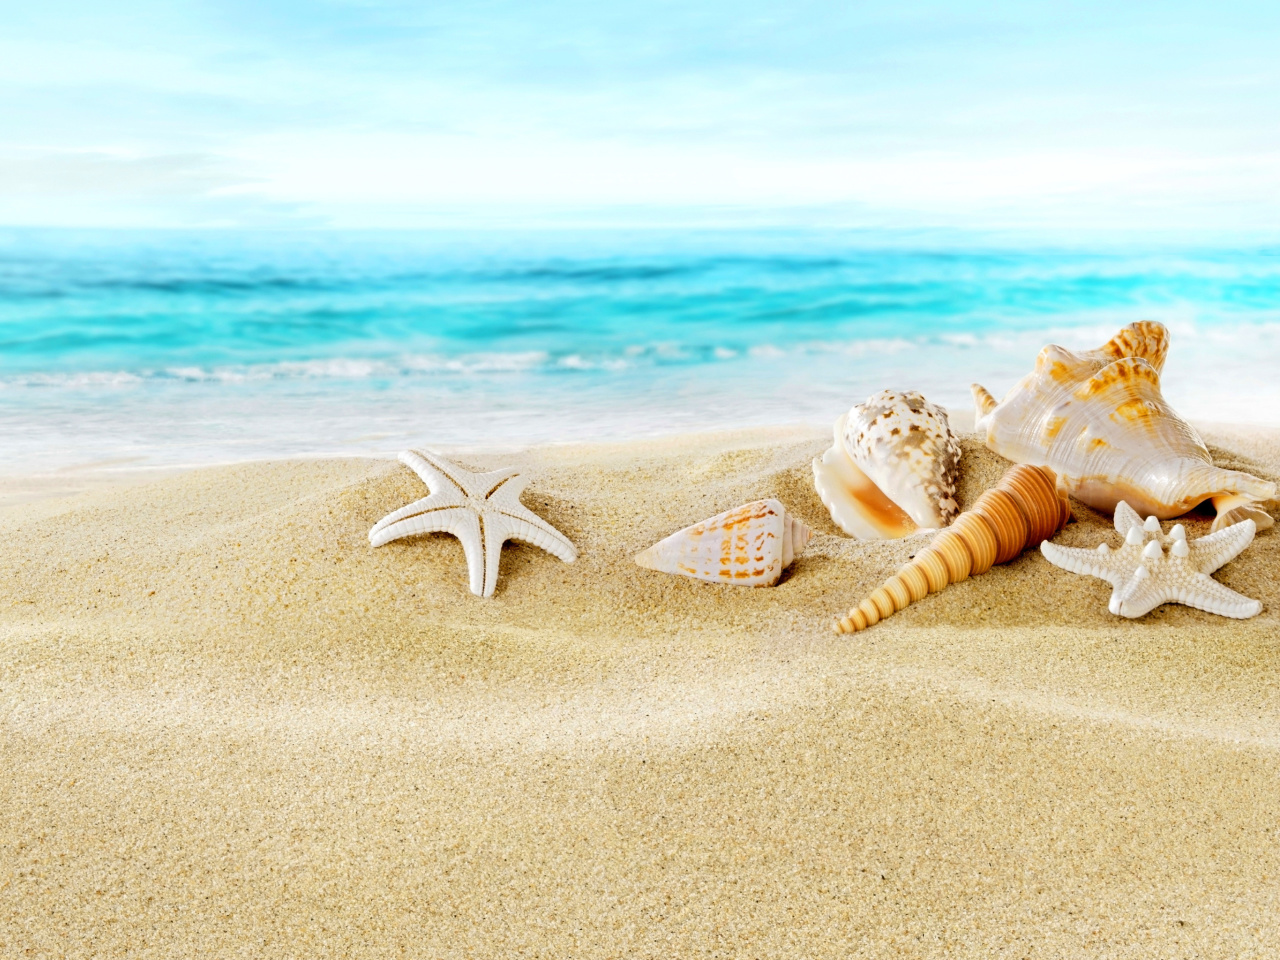 Обои Seashells on Sand Beach 1280x960